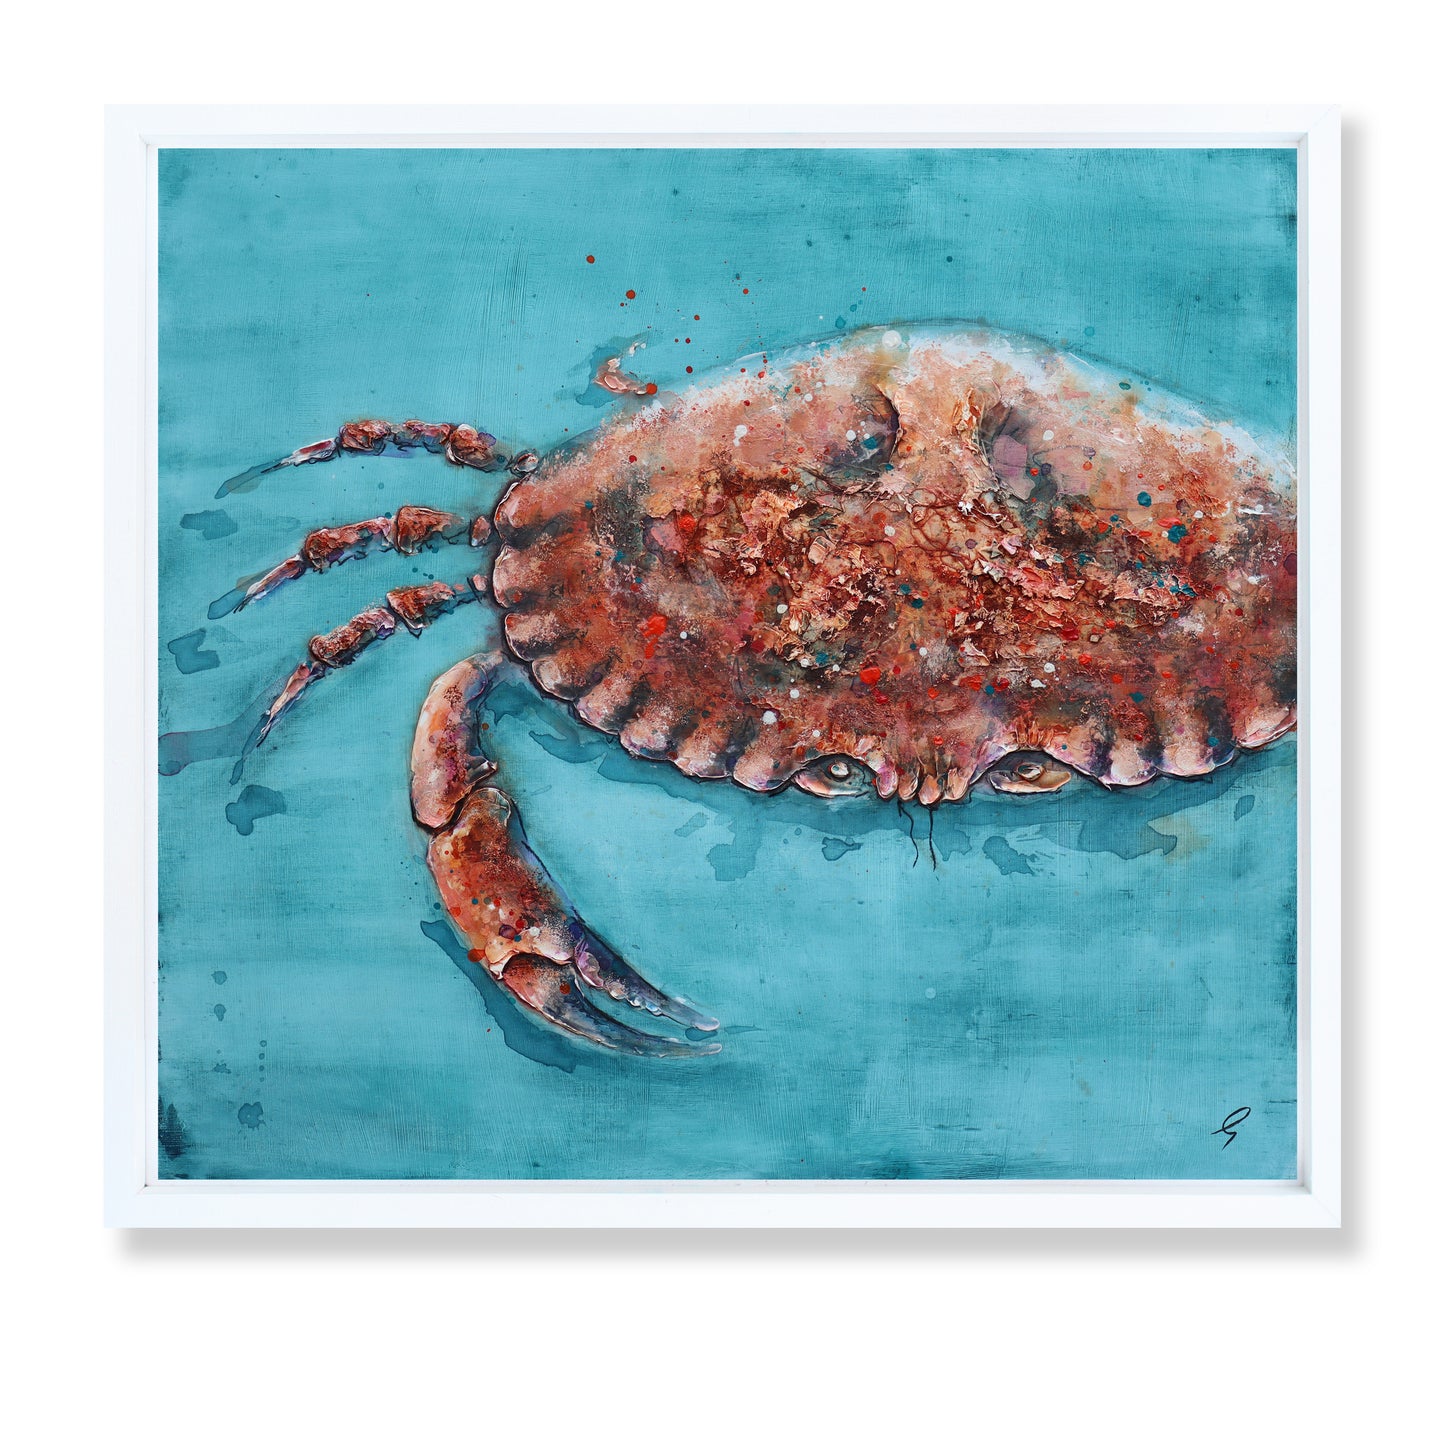 Cromer Crab by Giles Ward